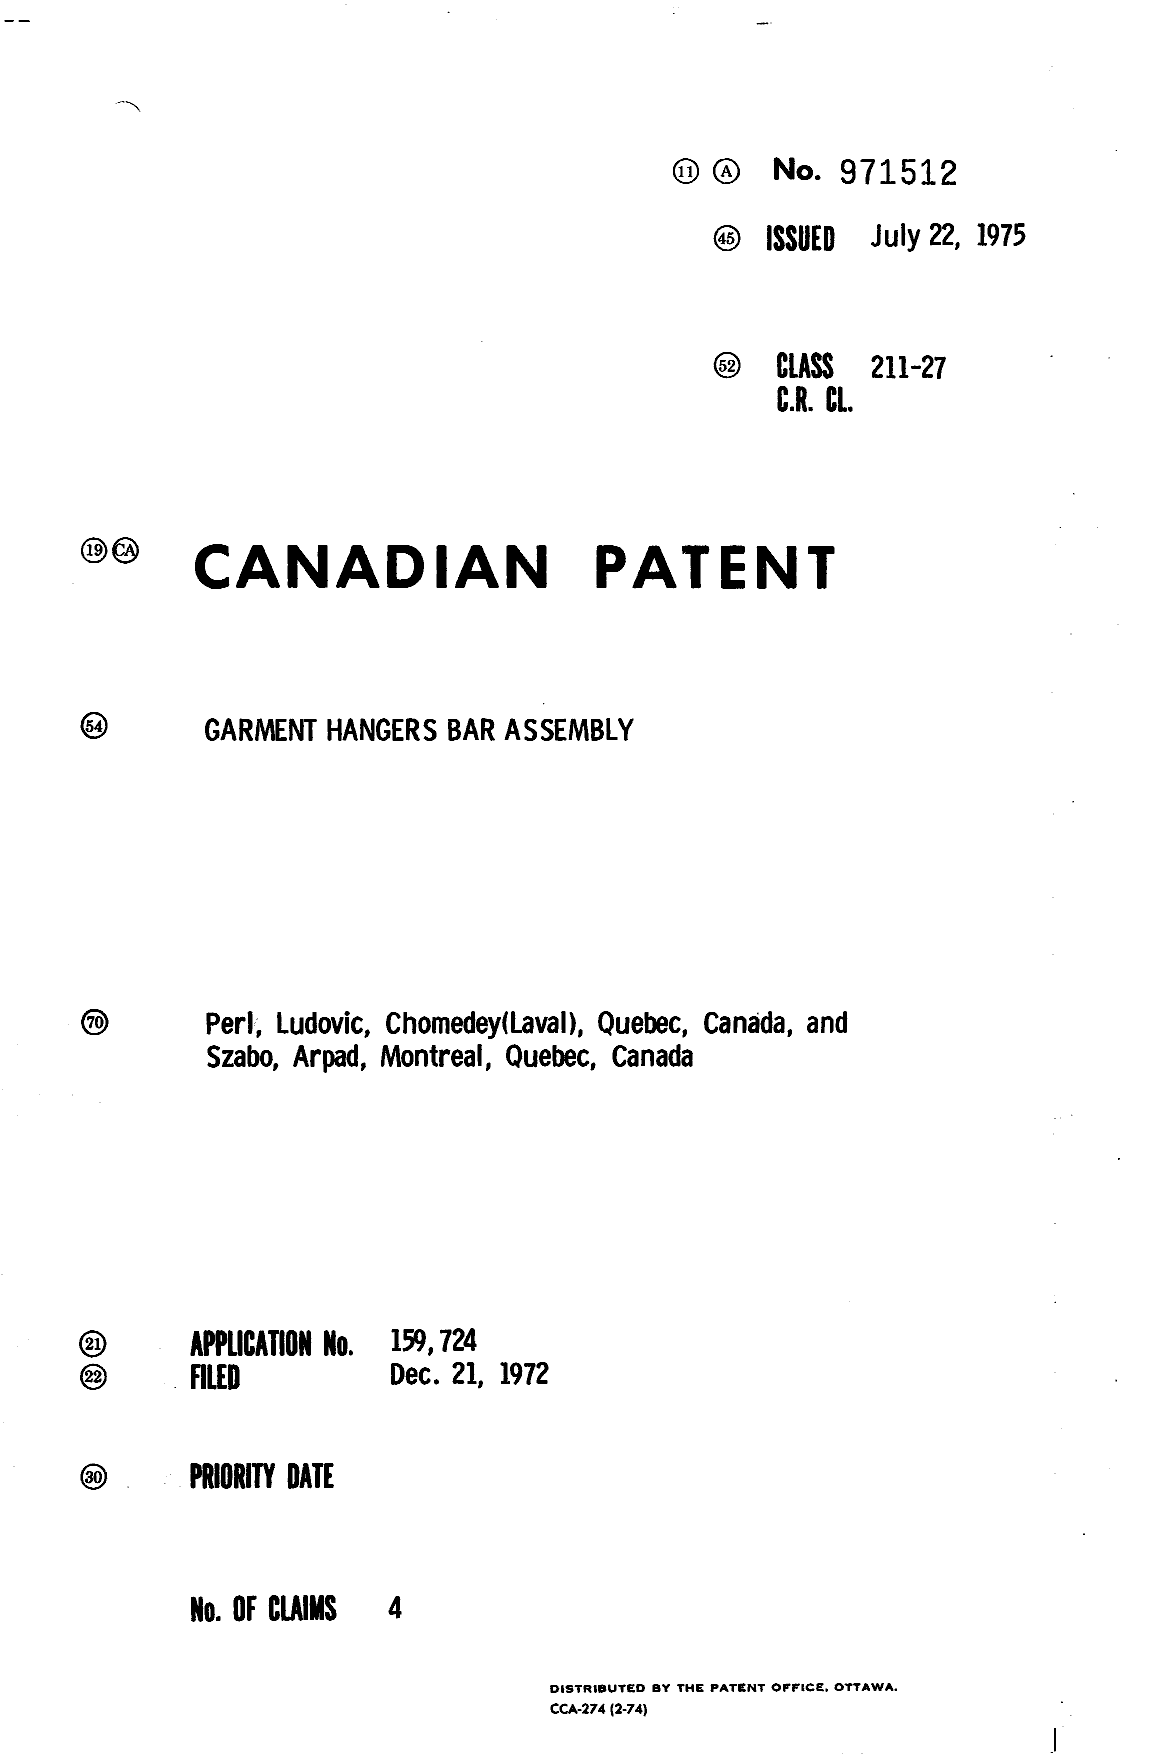 Document de brevet canadien 971512. Page couverture 19940707. Image 1 de 1